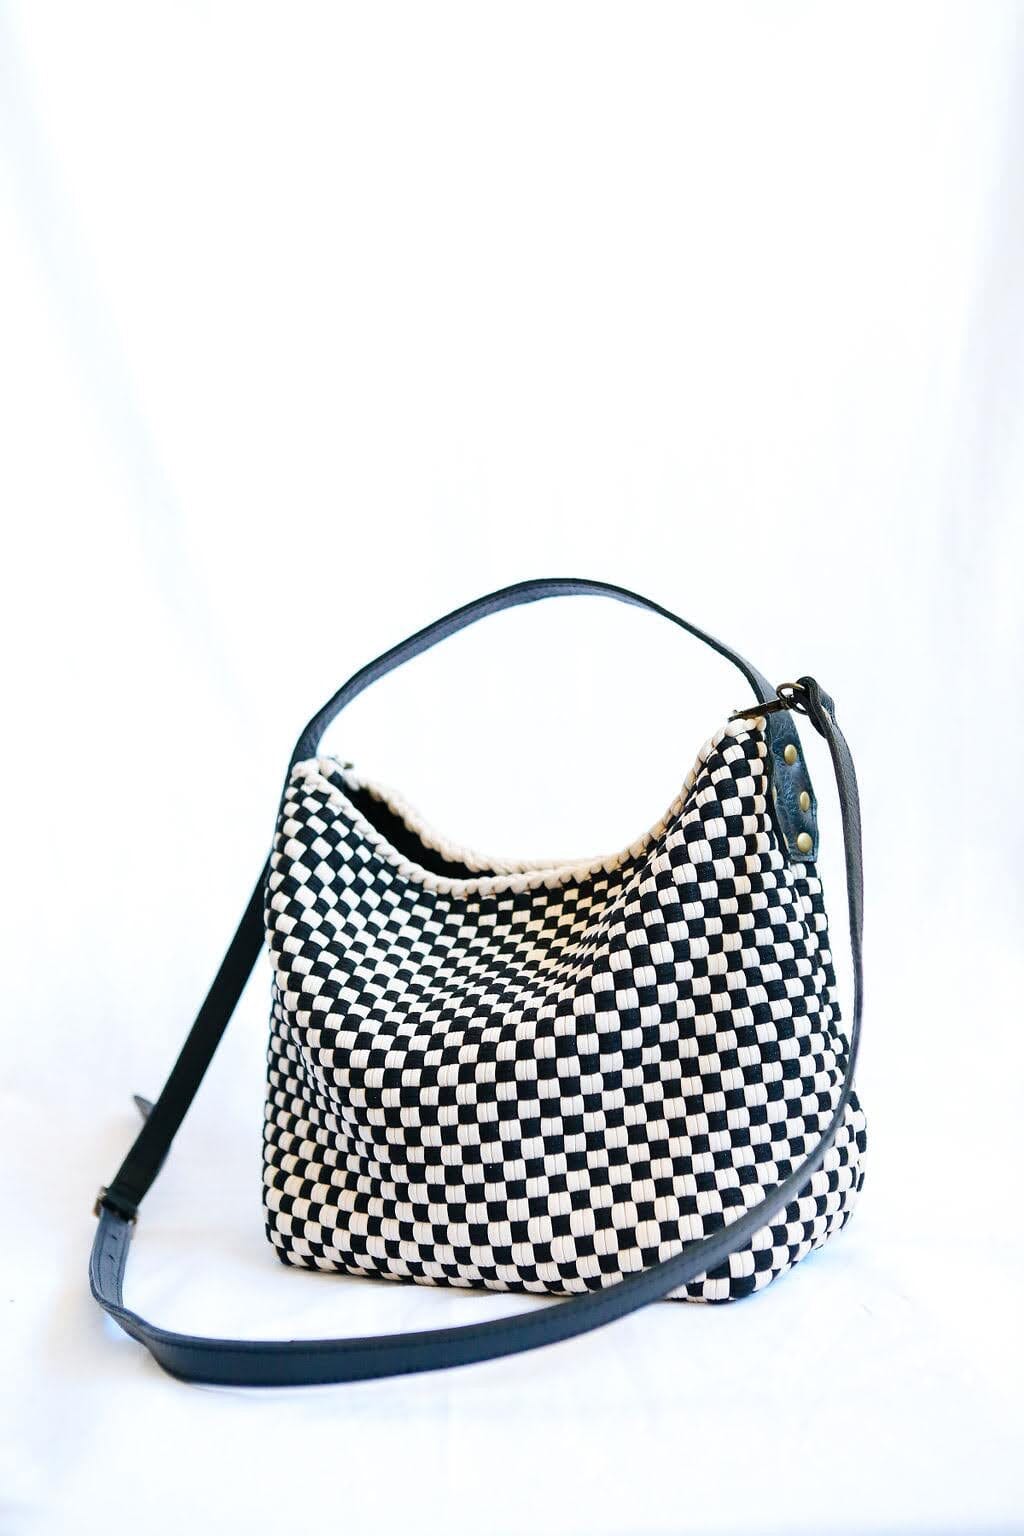 Buslo Mini Checkerboard Black & Beige Fashion Rags2Riches